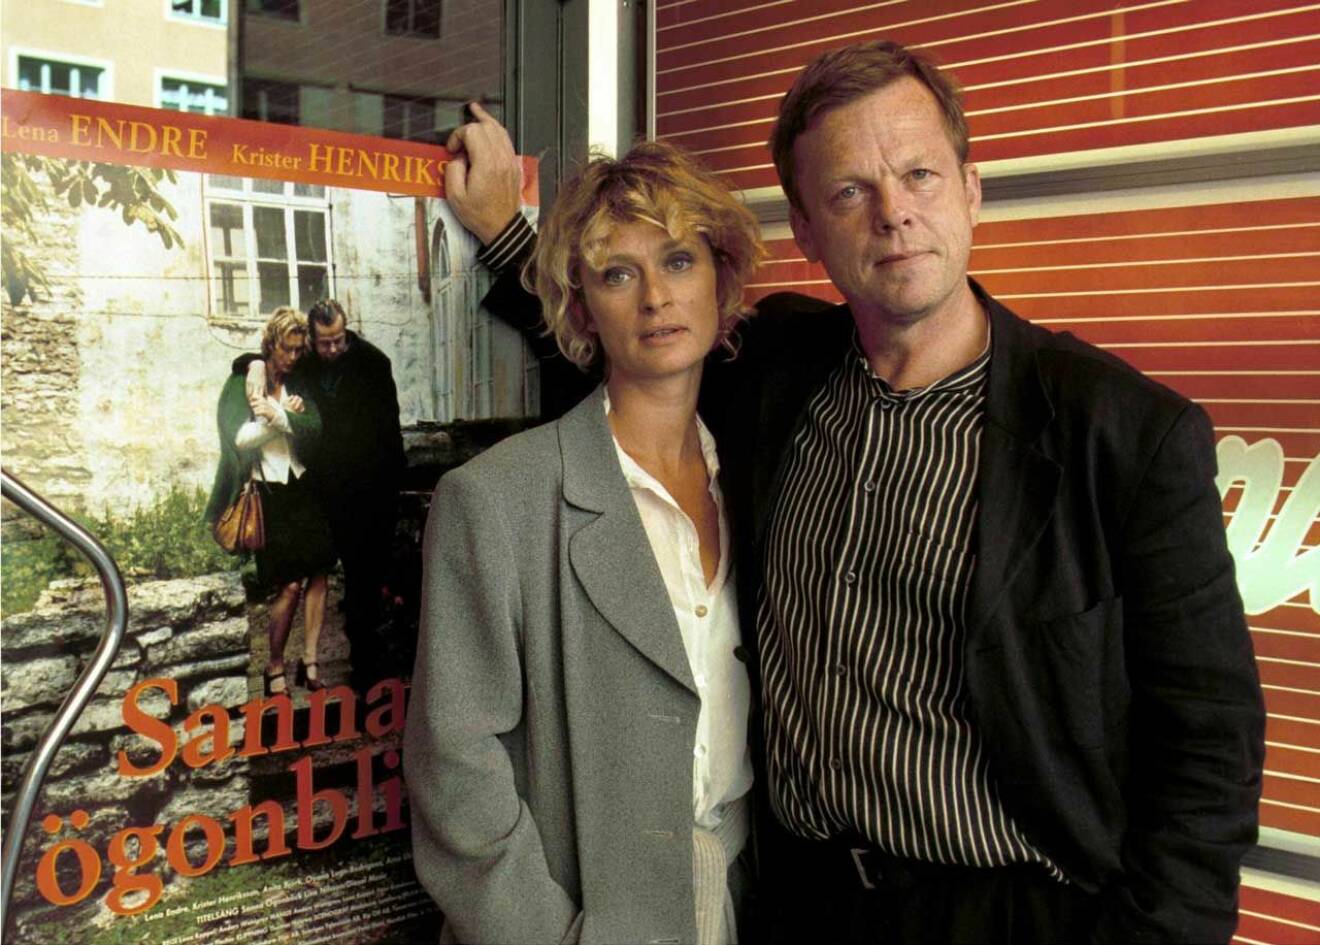 1998 med kollegan Krister Henriksson vid premiären av filmen Sanna ögonblick, där de spelade huvudrollerna.